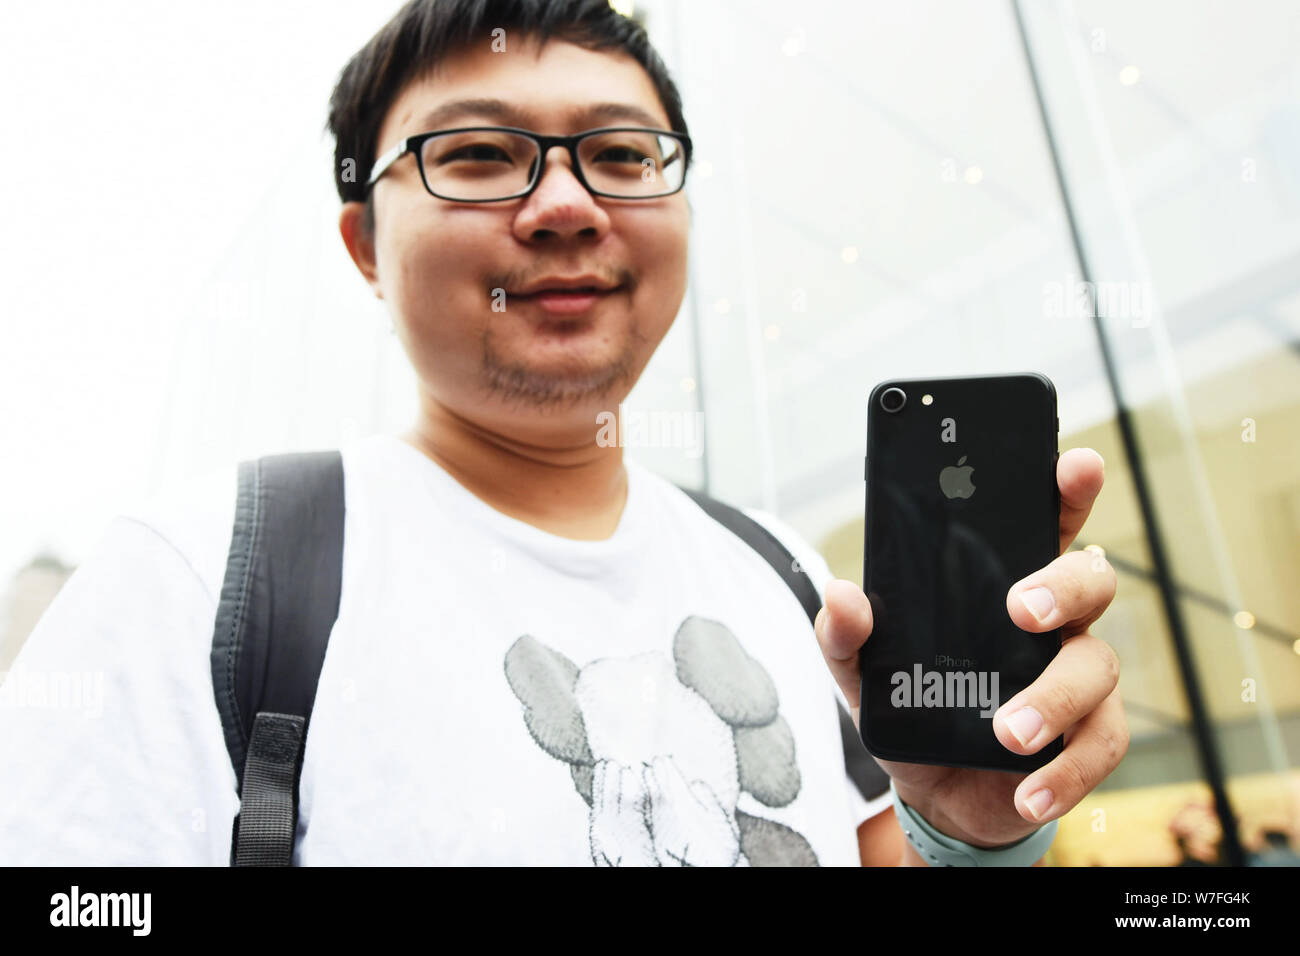 Eine chinesische Shopper zeigt seine iPhone 8 Smartphone zu einem Flagship Store von Apple in Hangzhou City, East China Zhejiang provinz, 22. September 2017. Th Stockfoto